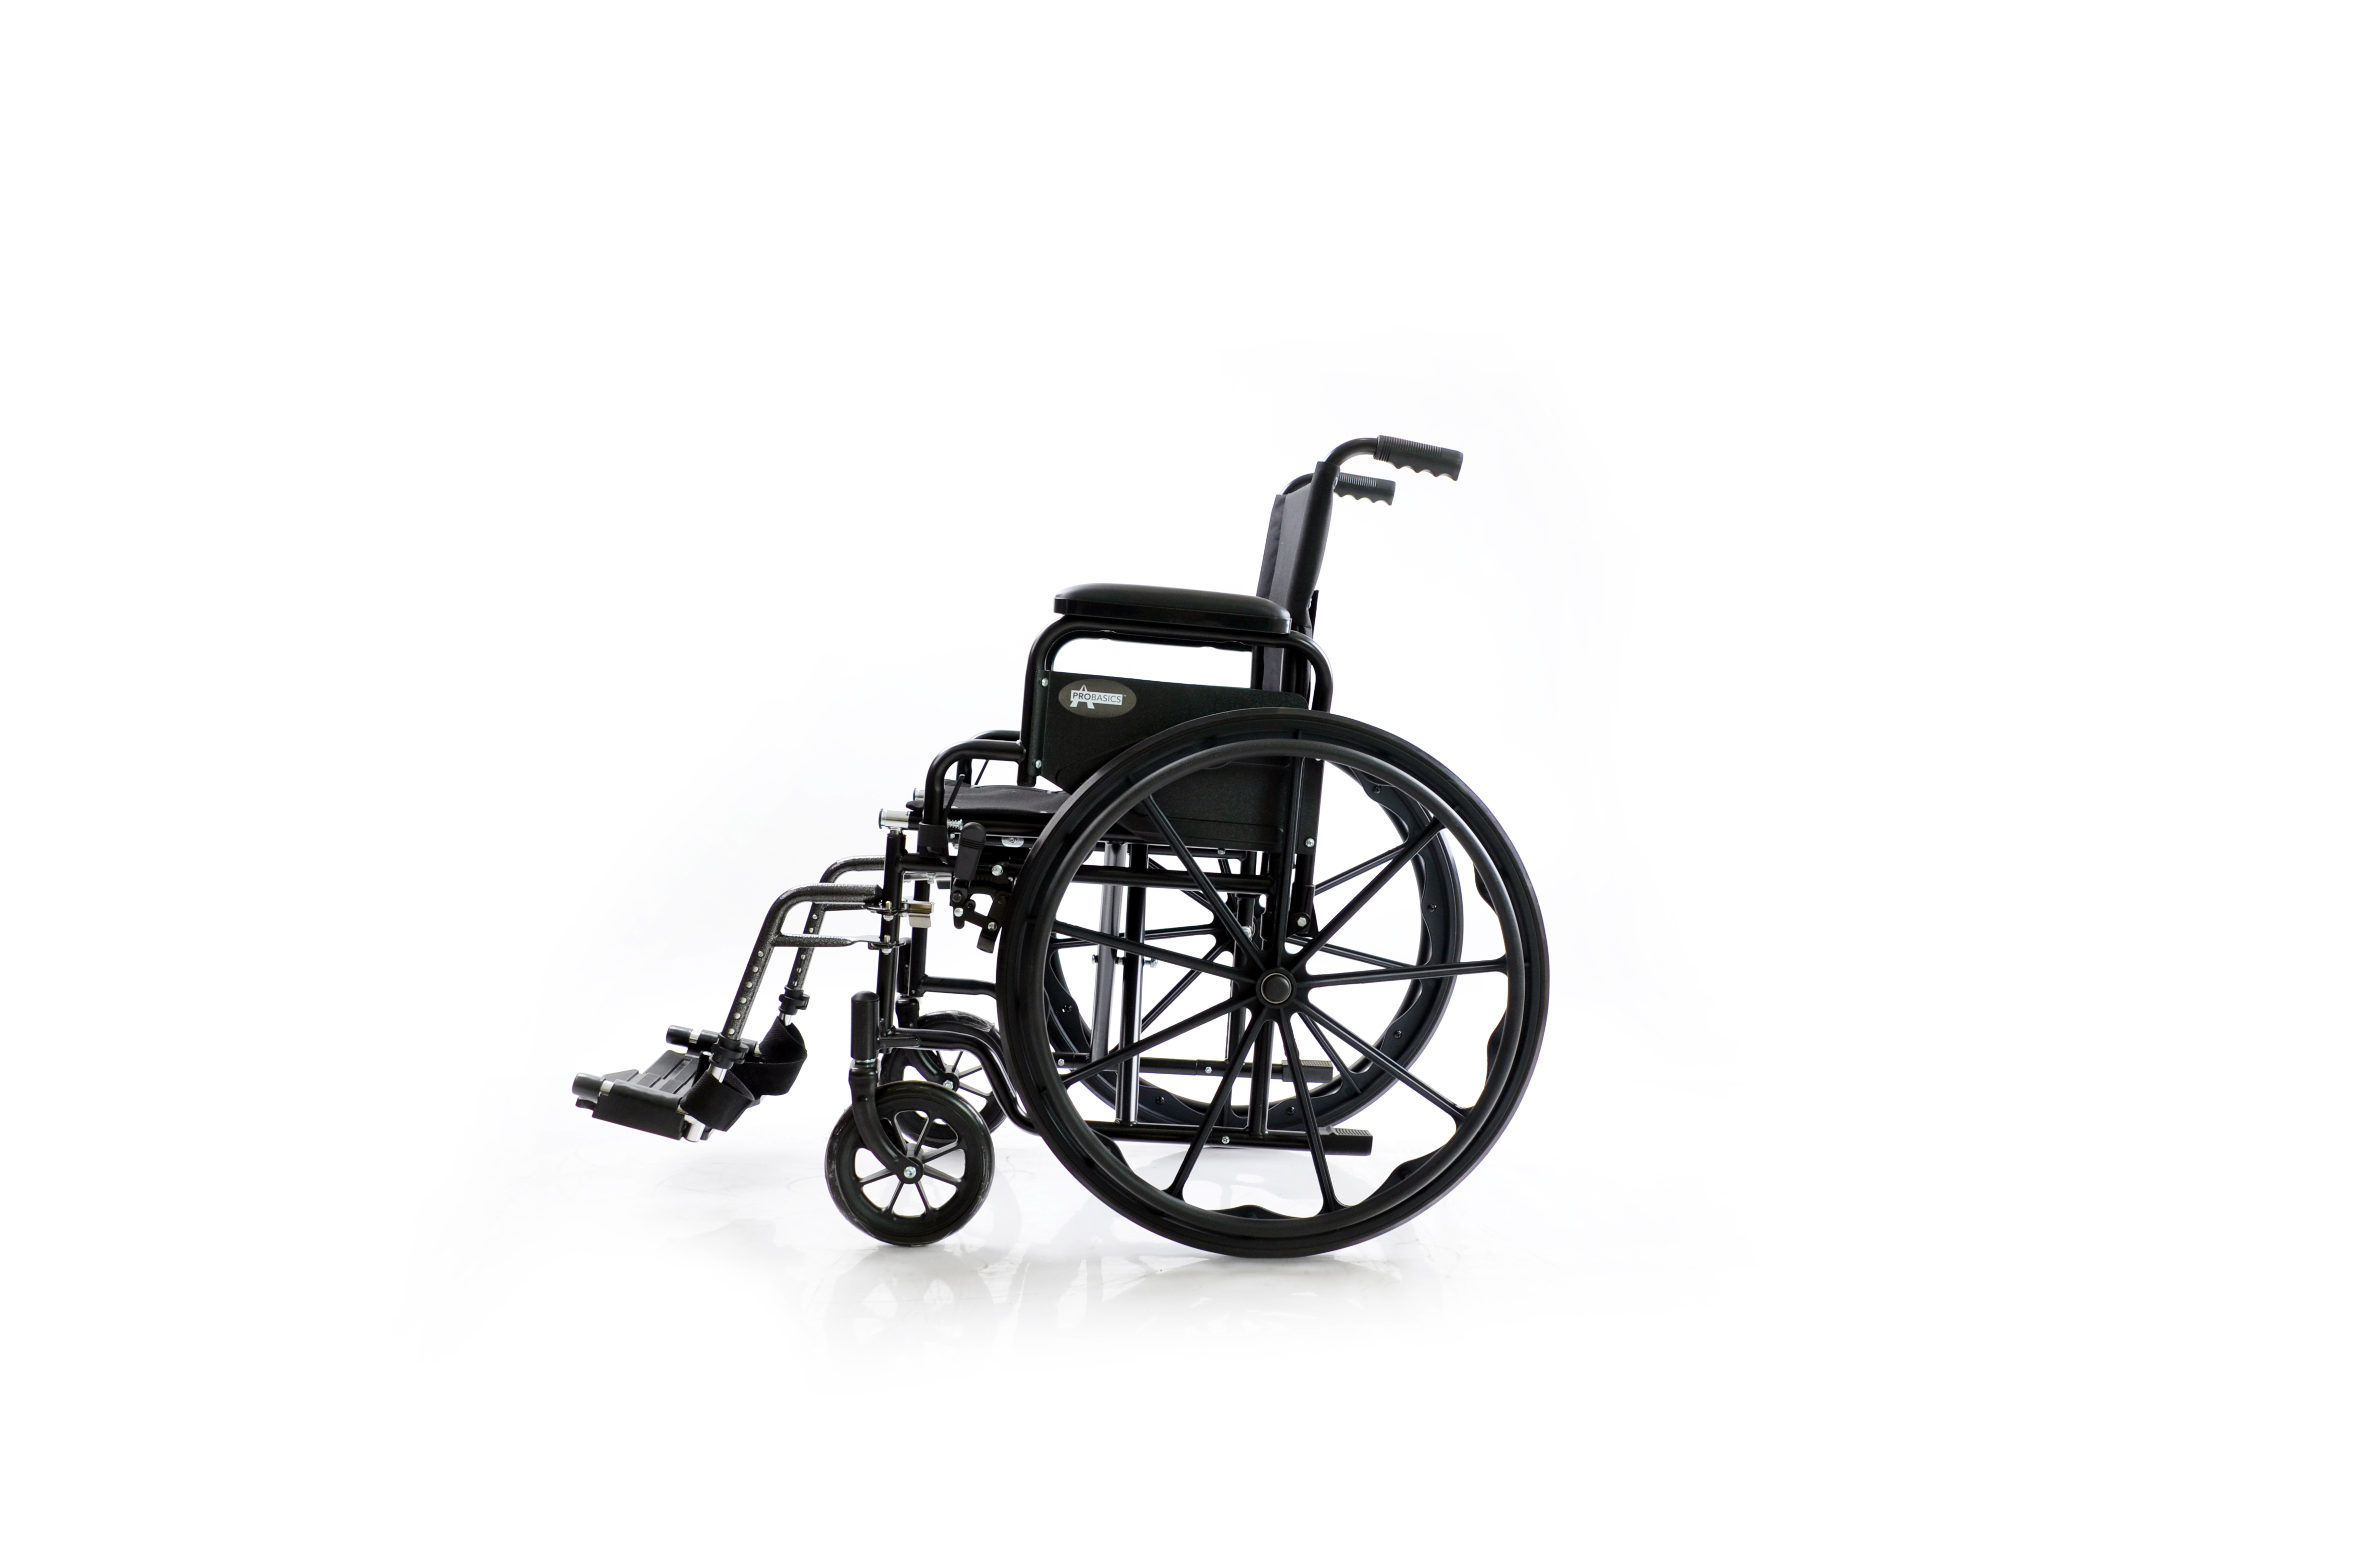 Durable manual wheelchair